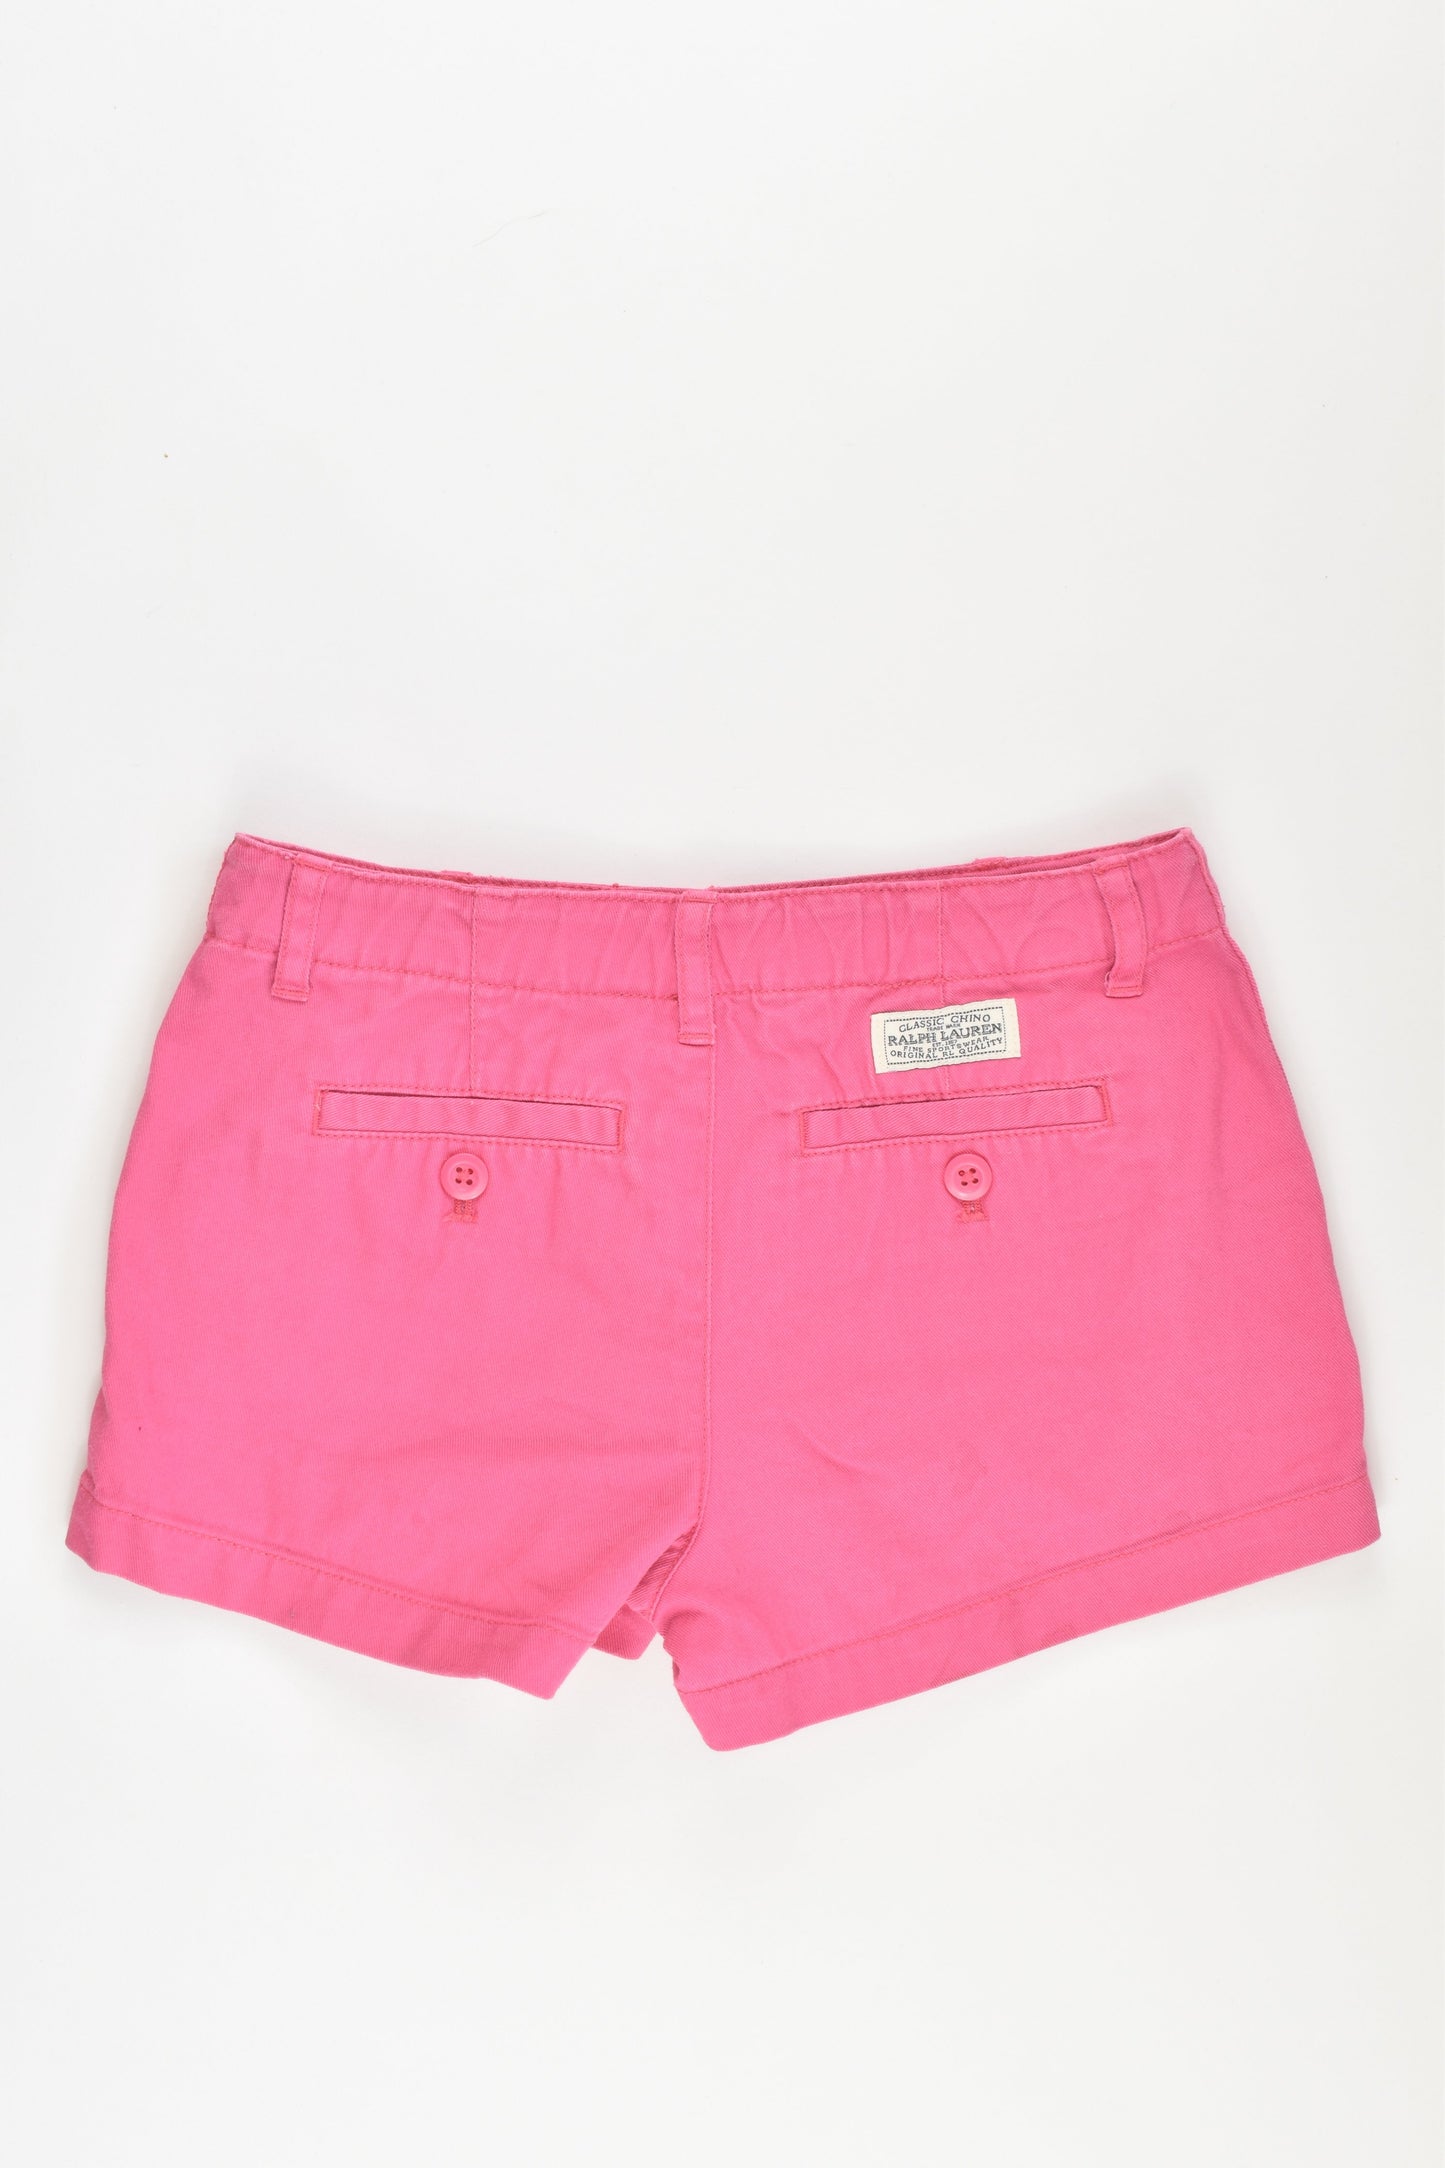 Ralph Lauren Size 6 Shorts